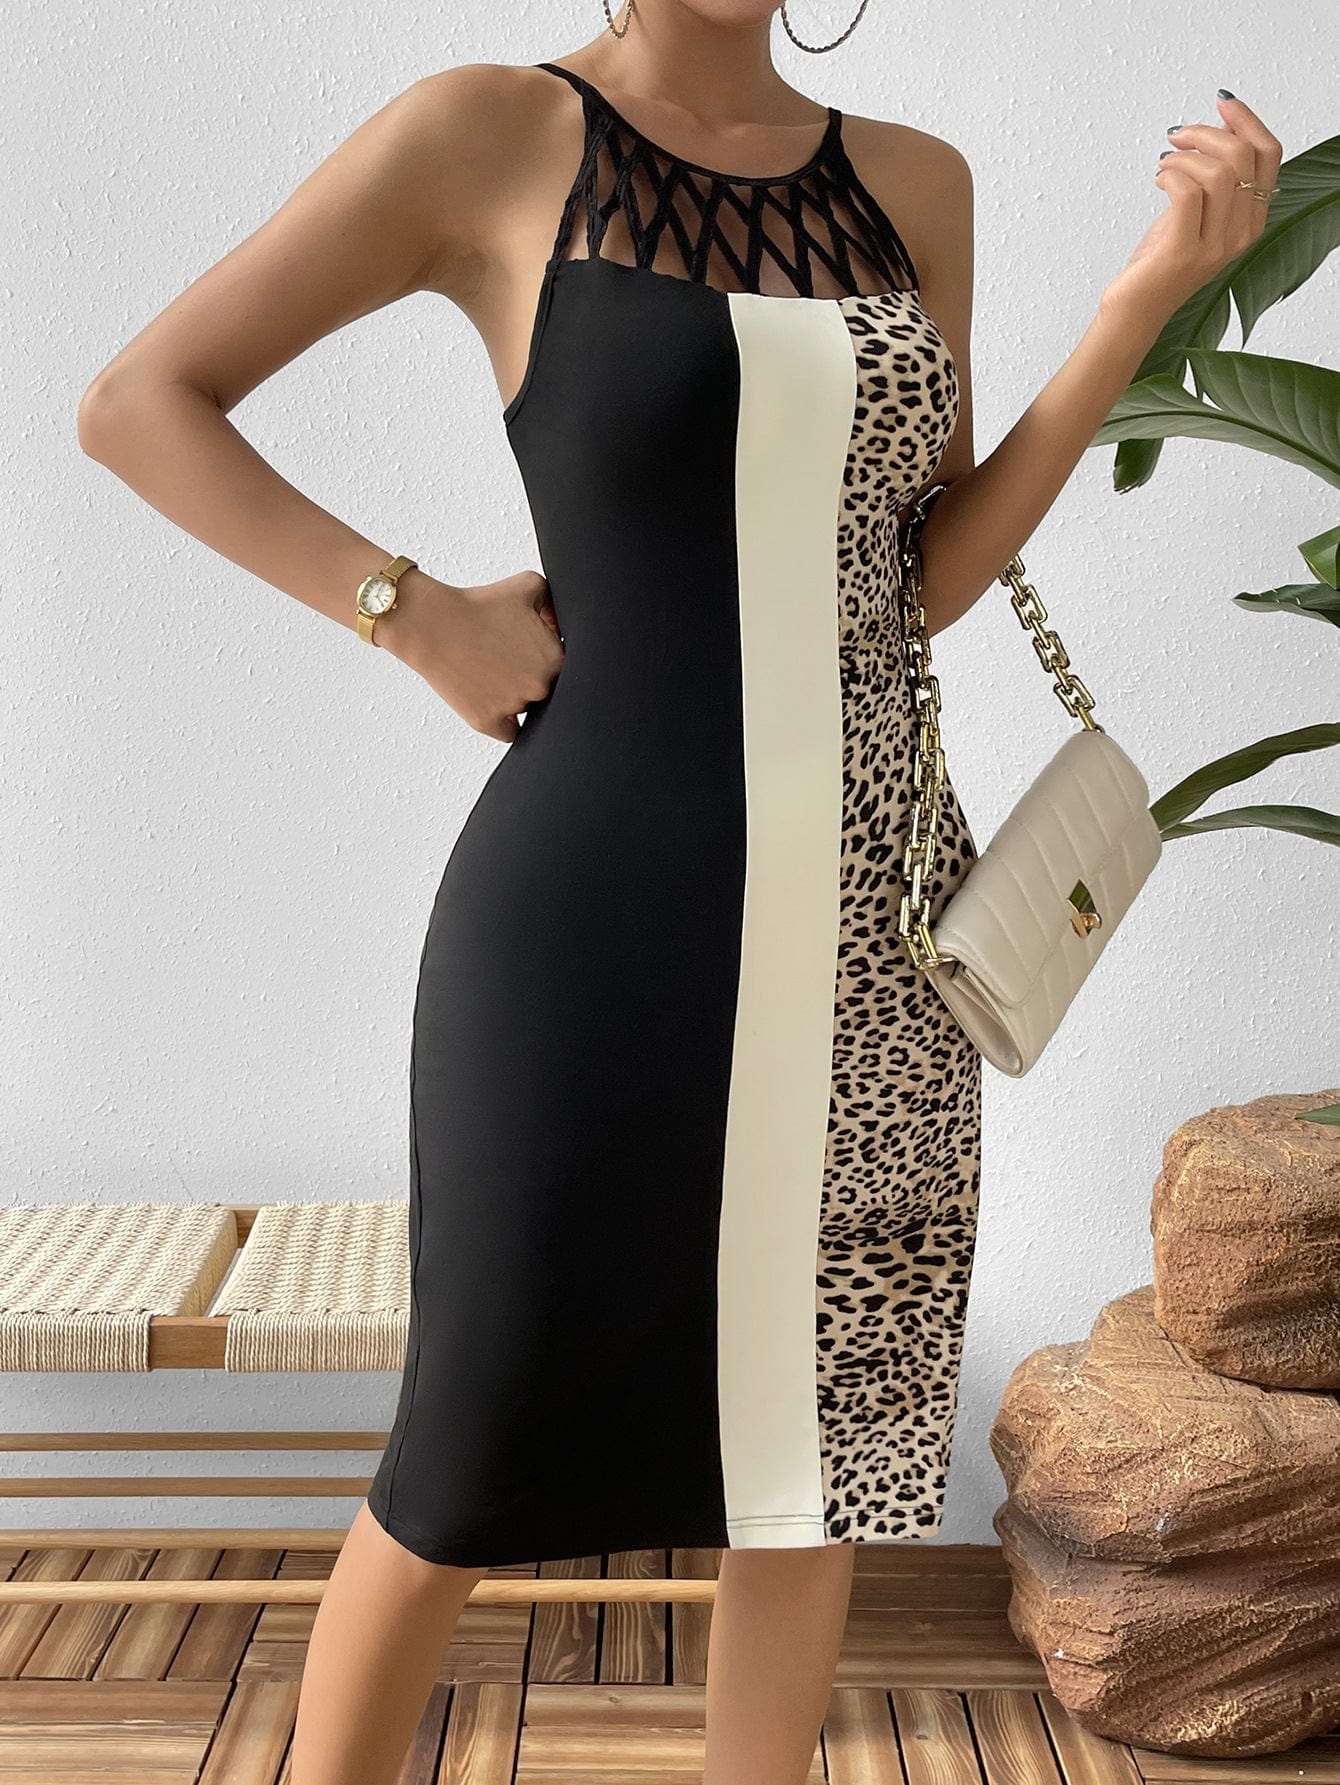 Leopard Color Block Cutout Sleeveless Knee-Length Dress Uniquemoniquemarketplace.com 